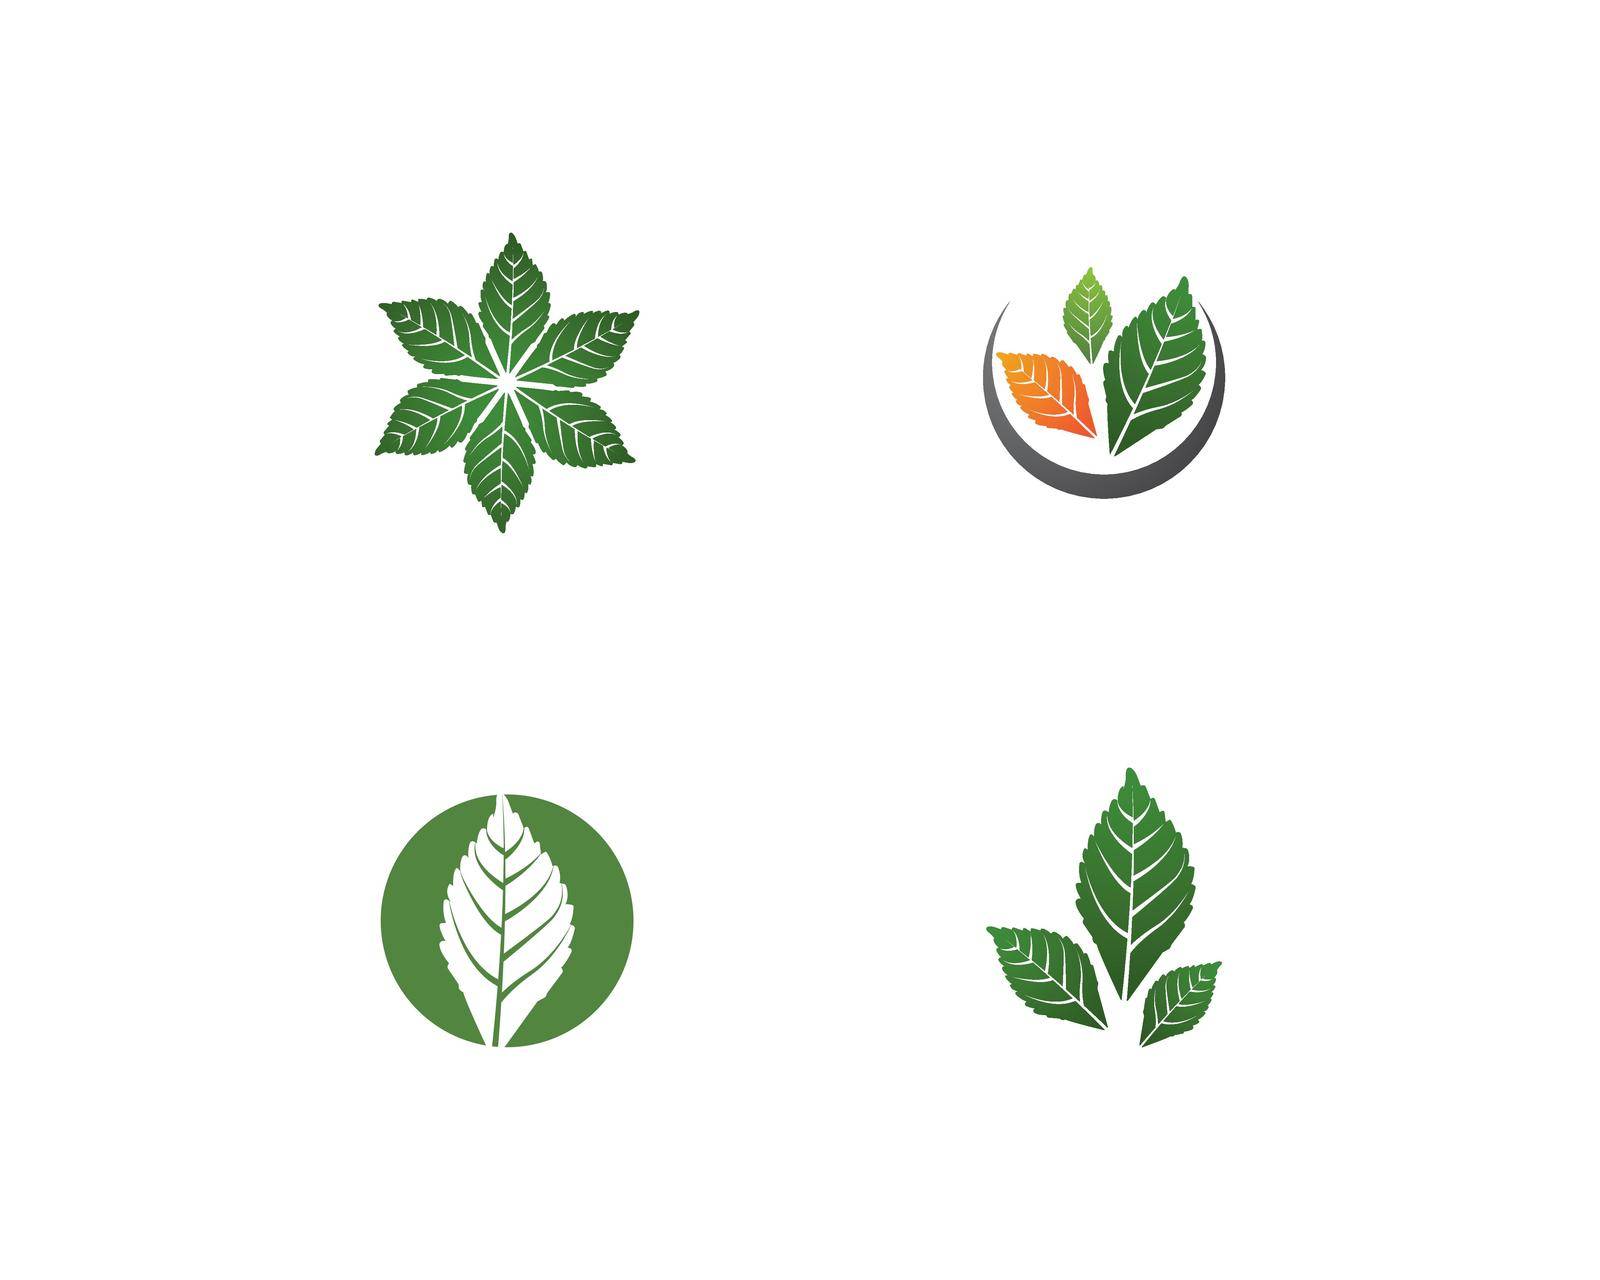 Mint leaf logo illustration vector